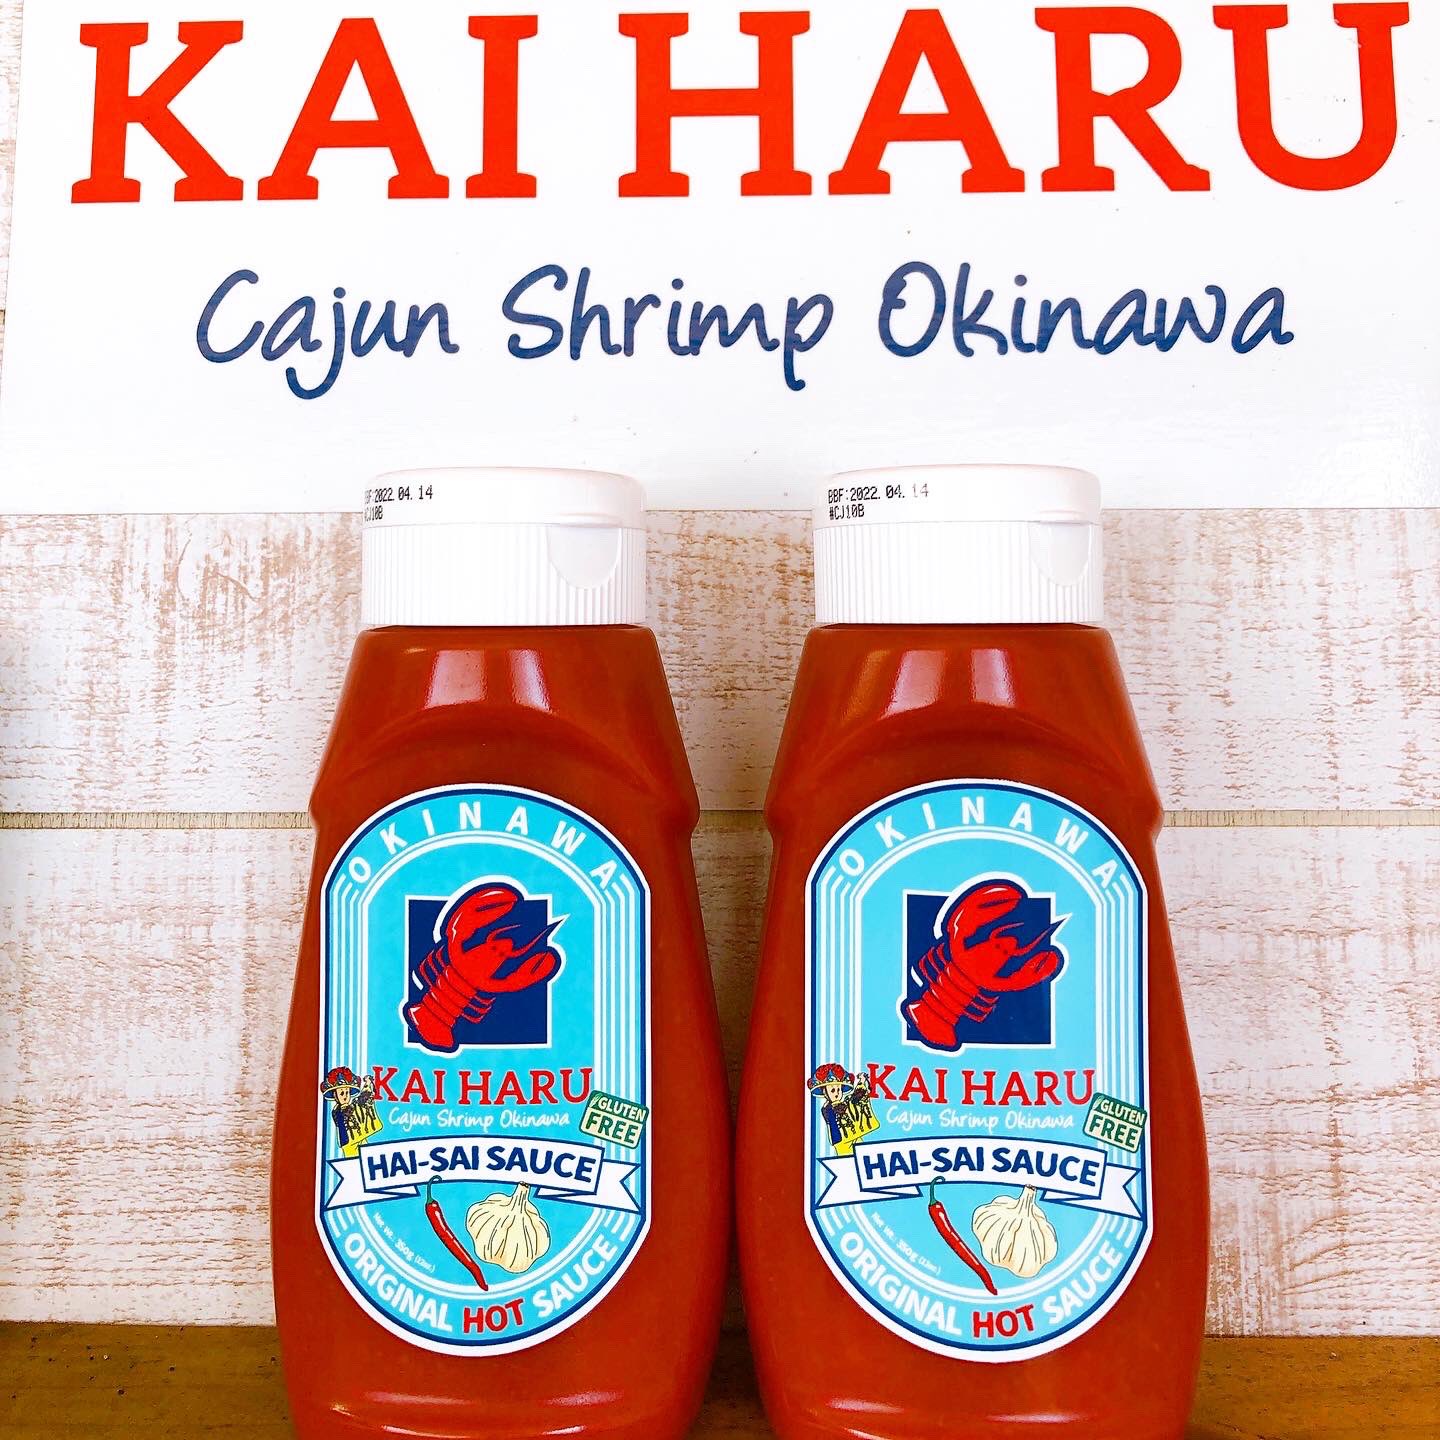 KAIHARU_Cajun shrimp okinawa (@KaiharuO) / Twitter